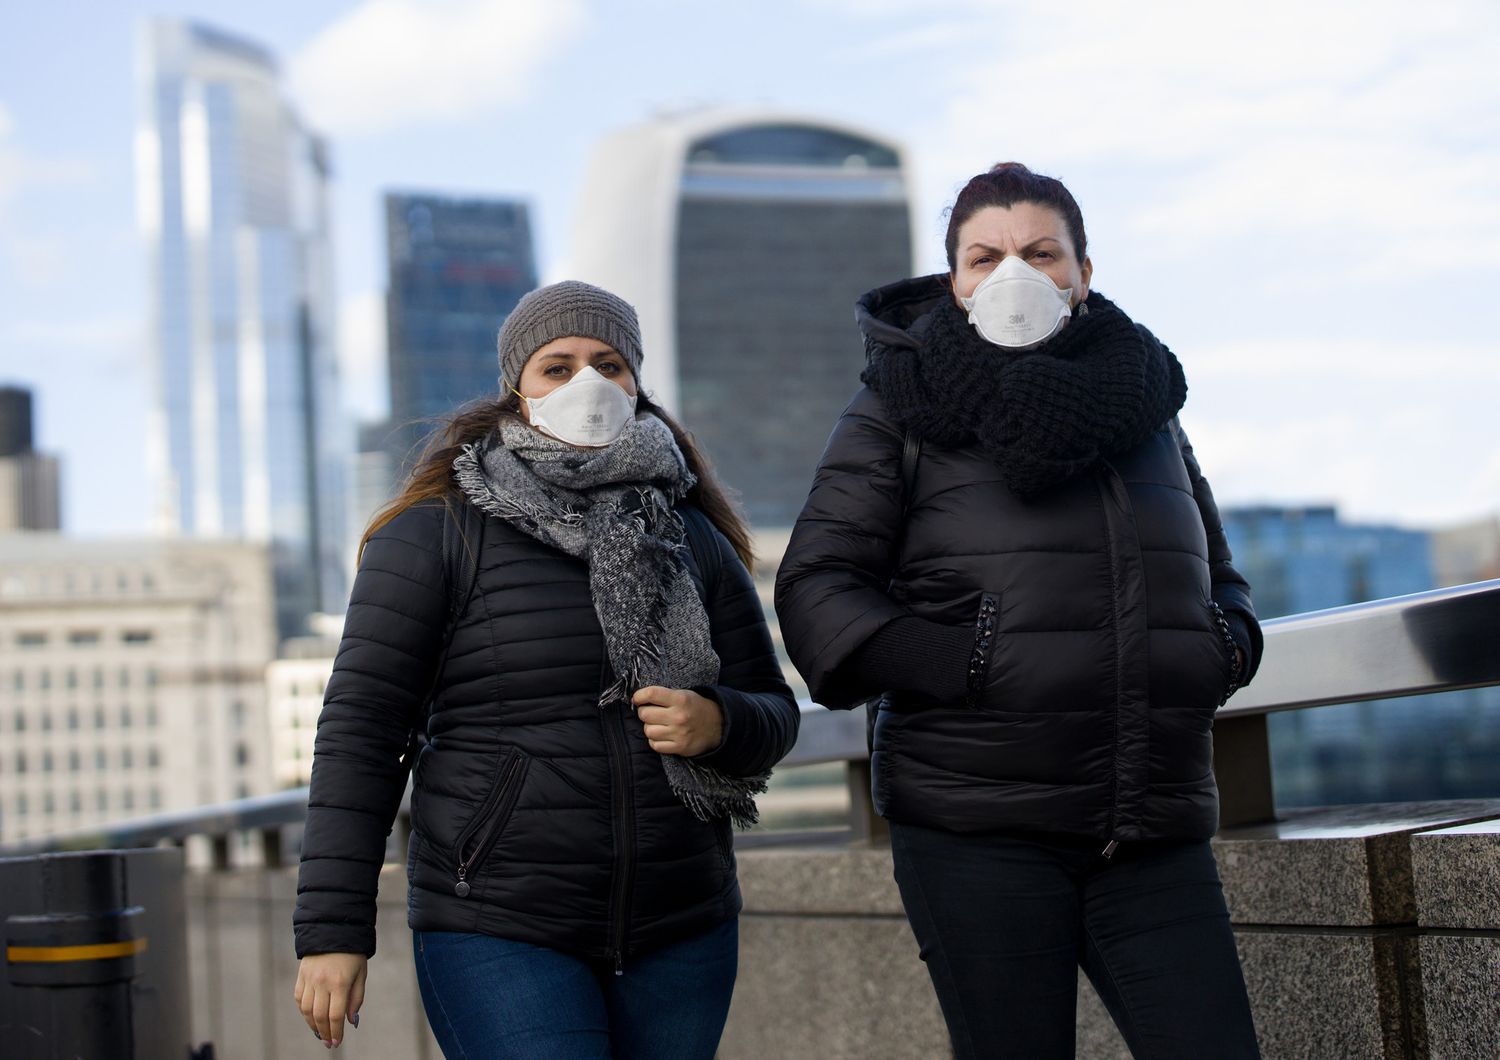 Con le mascherine contro il coronavirus nel centro di Londra